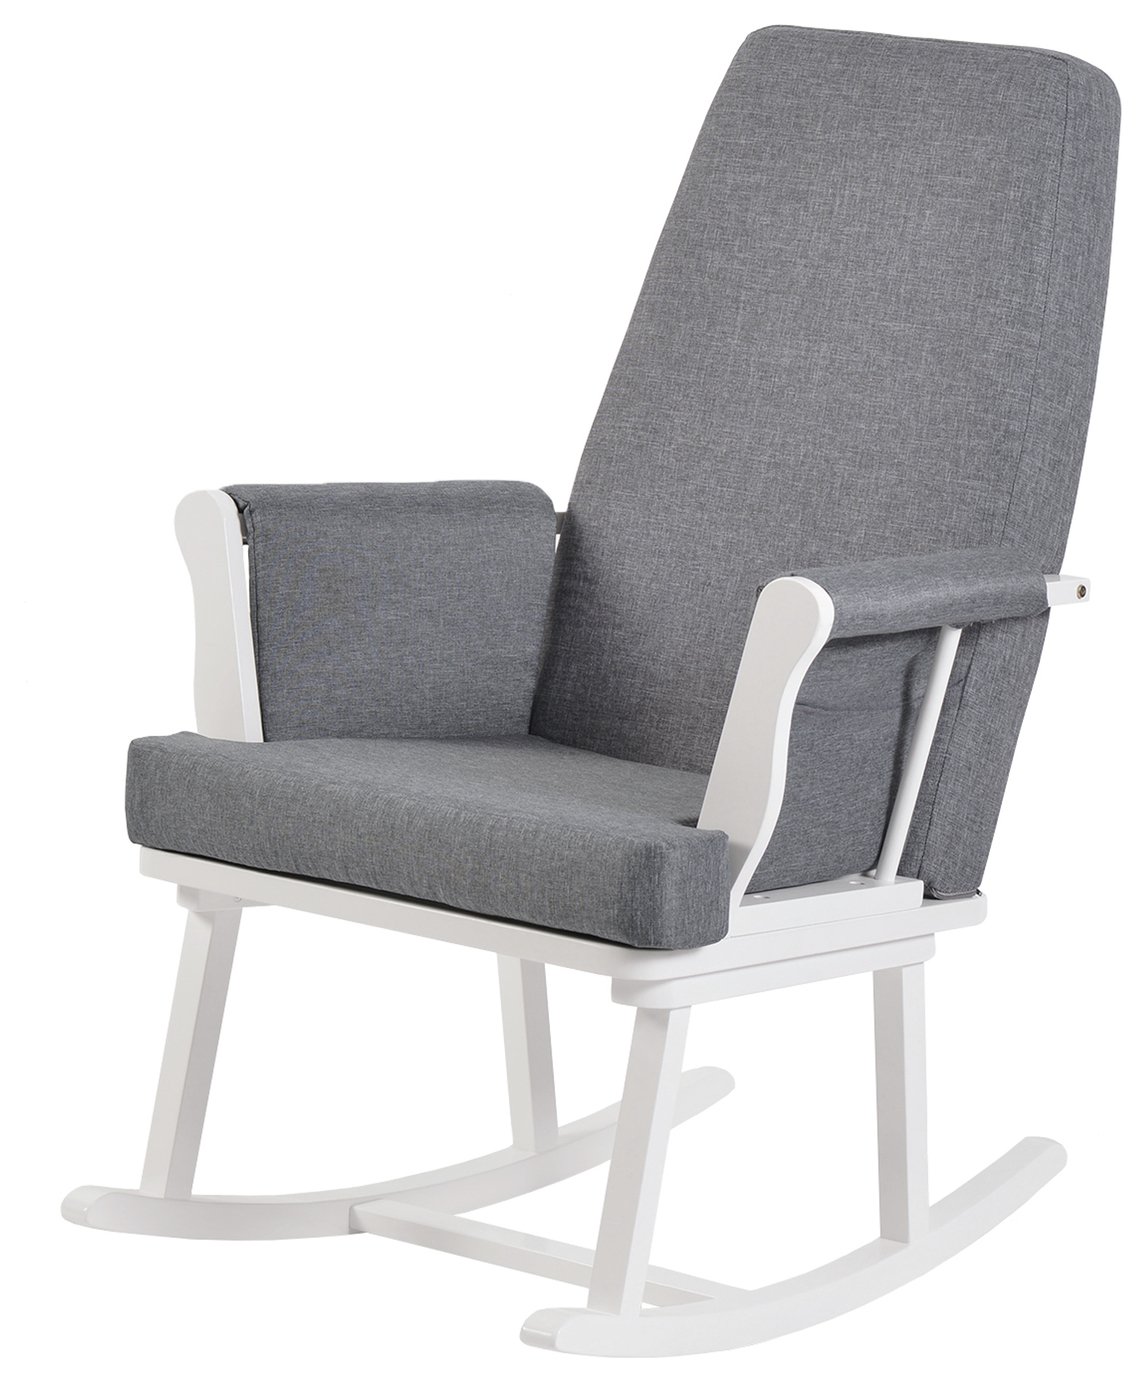 Buy KUB Haldon Rocking Chair - White 